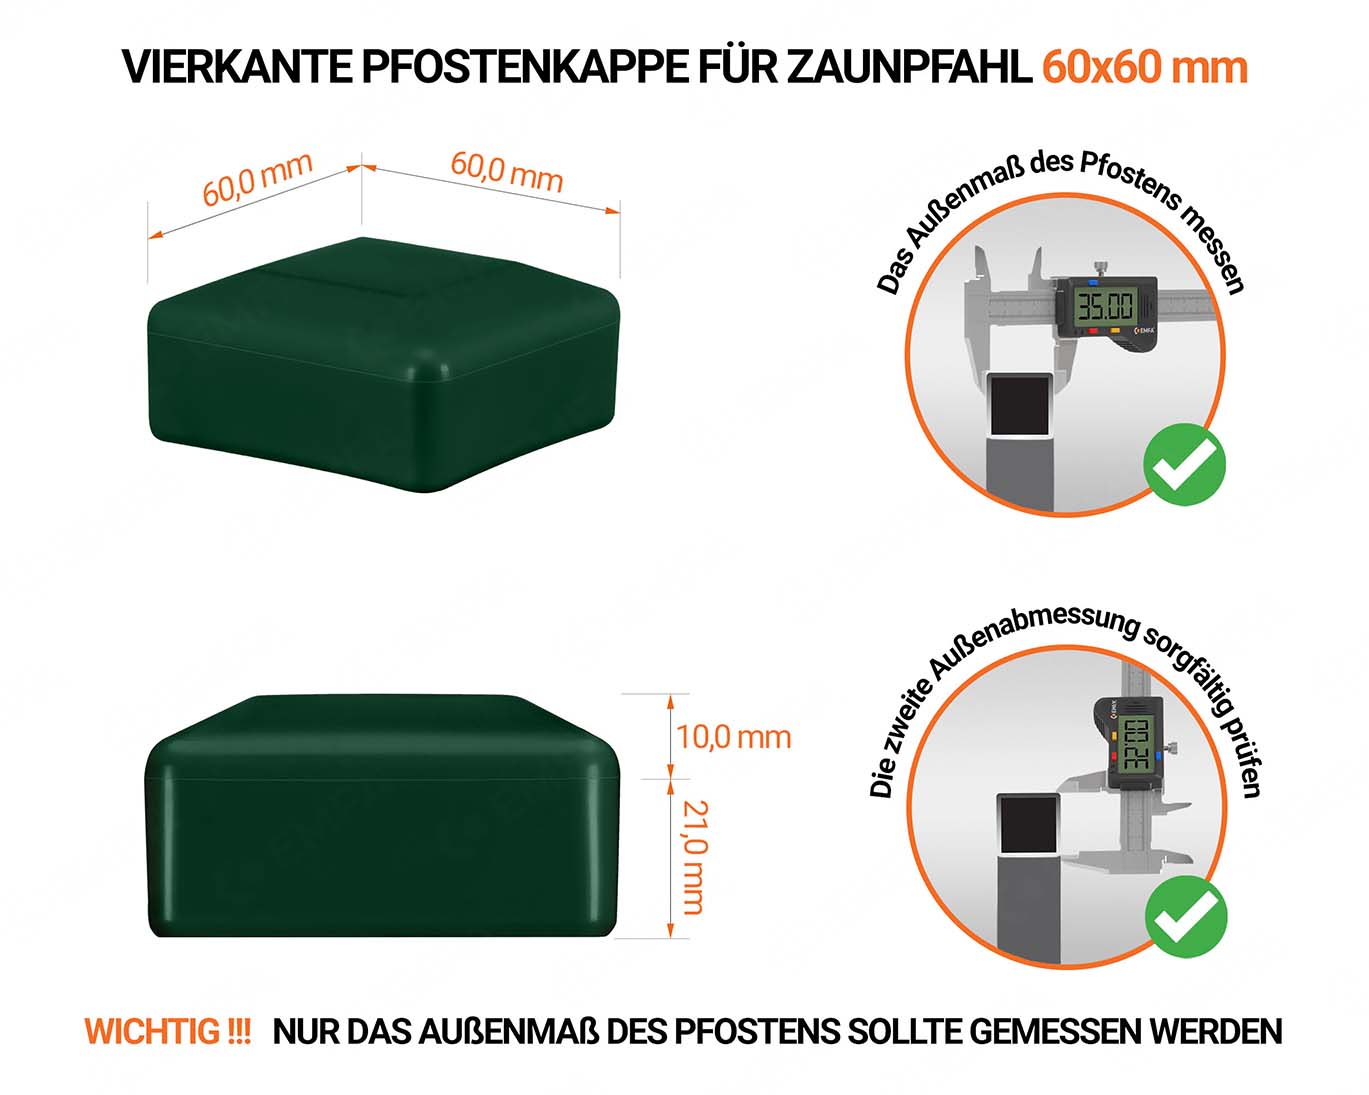 Grüne Pfostenkappen vierkant für Pfostenmaße 60x60 mm  mit technischen Abmessungen und Anleitung für korrekte Messung